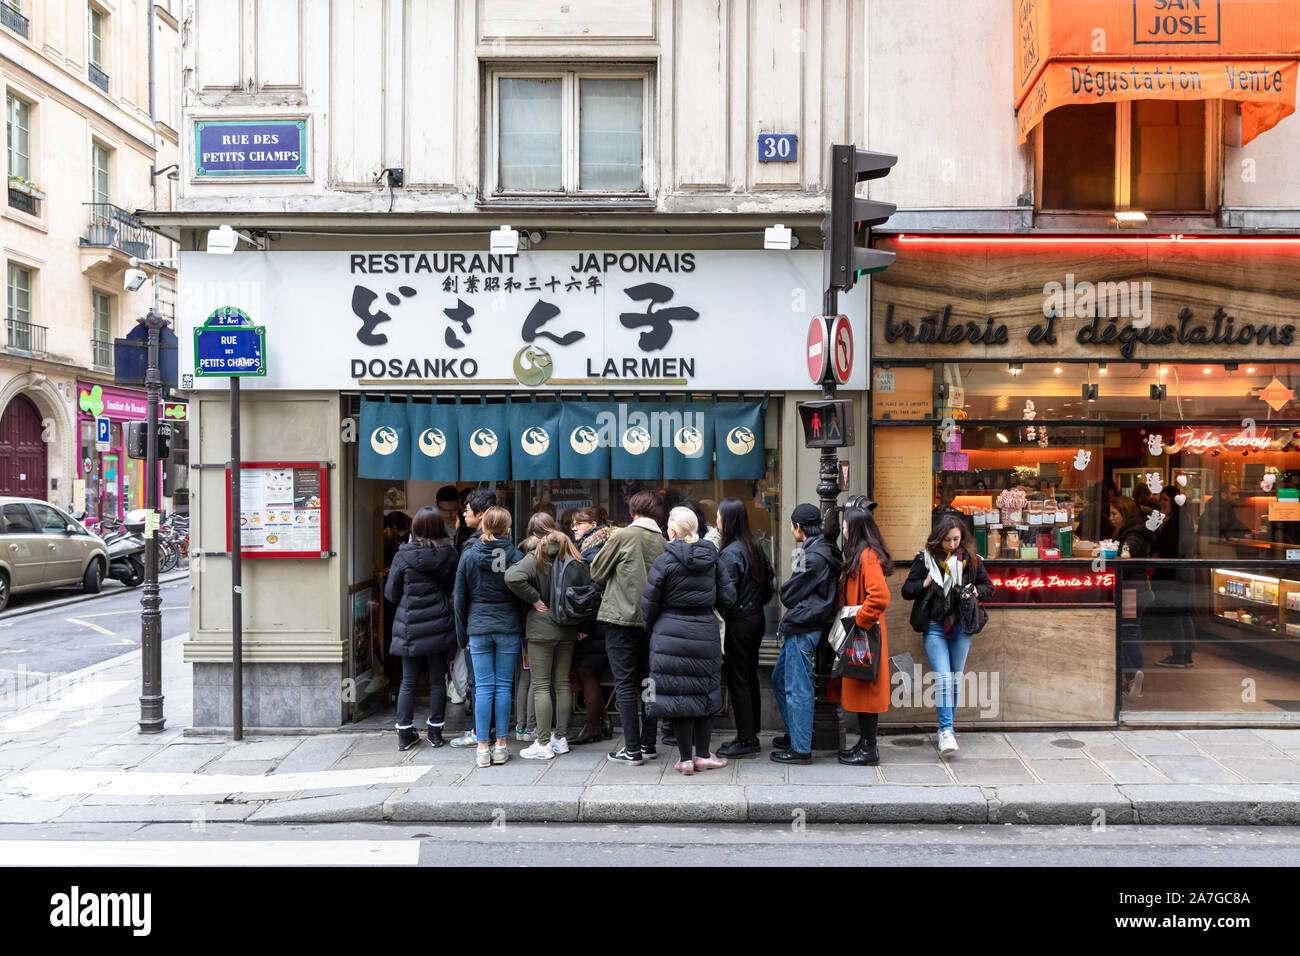 Queue outside Dosanko Larmen, Restaurant Japonais, Japanese ramen restaurant; Rue Sainte-Anne, Paris, France Stock Photo